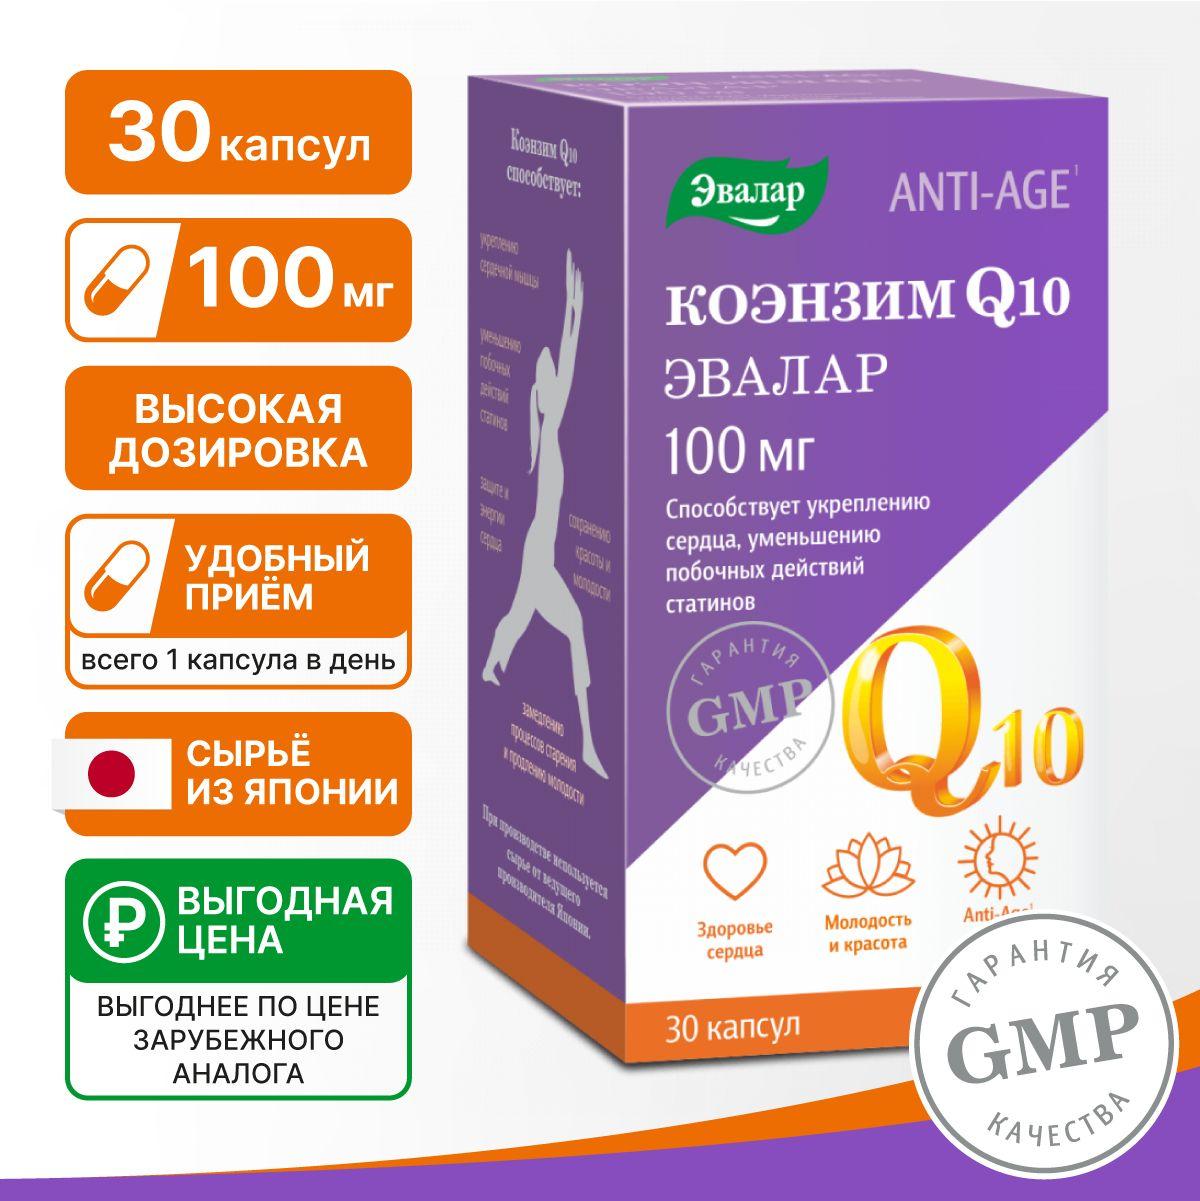 Коэнзим Coenzyme Q10 100 мг, Эвалар, витамины для сердца и сосудов, бад для красоты, молодости и энергии, антиоксидант, 30 капсул